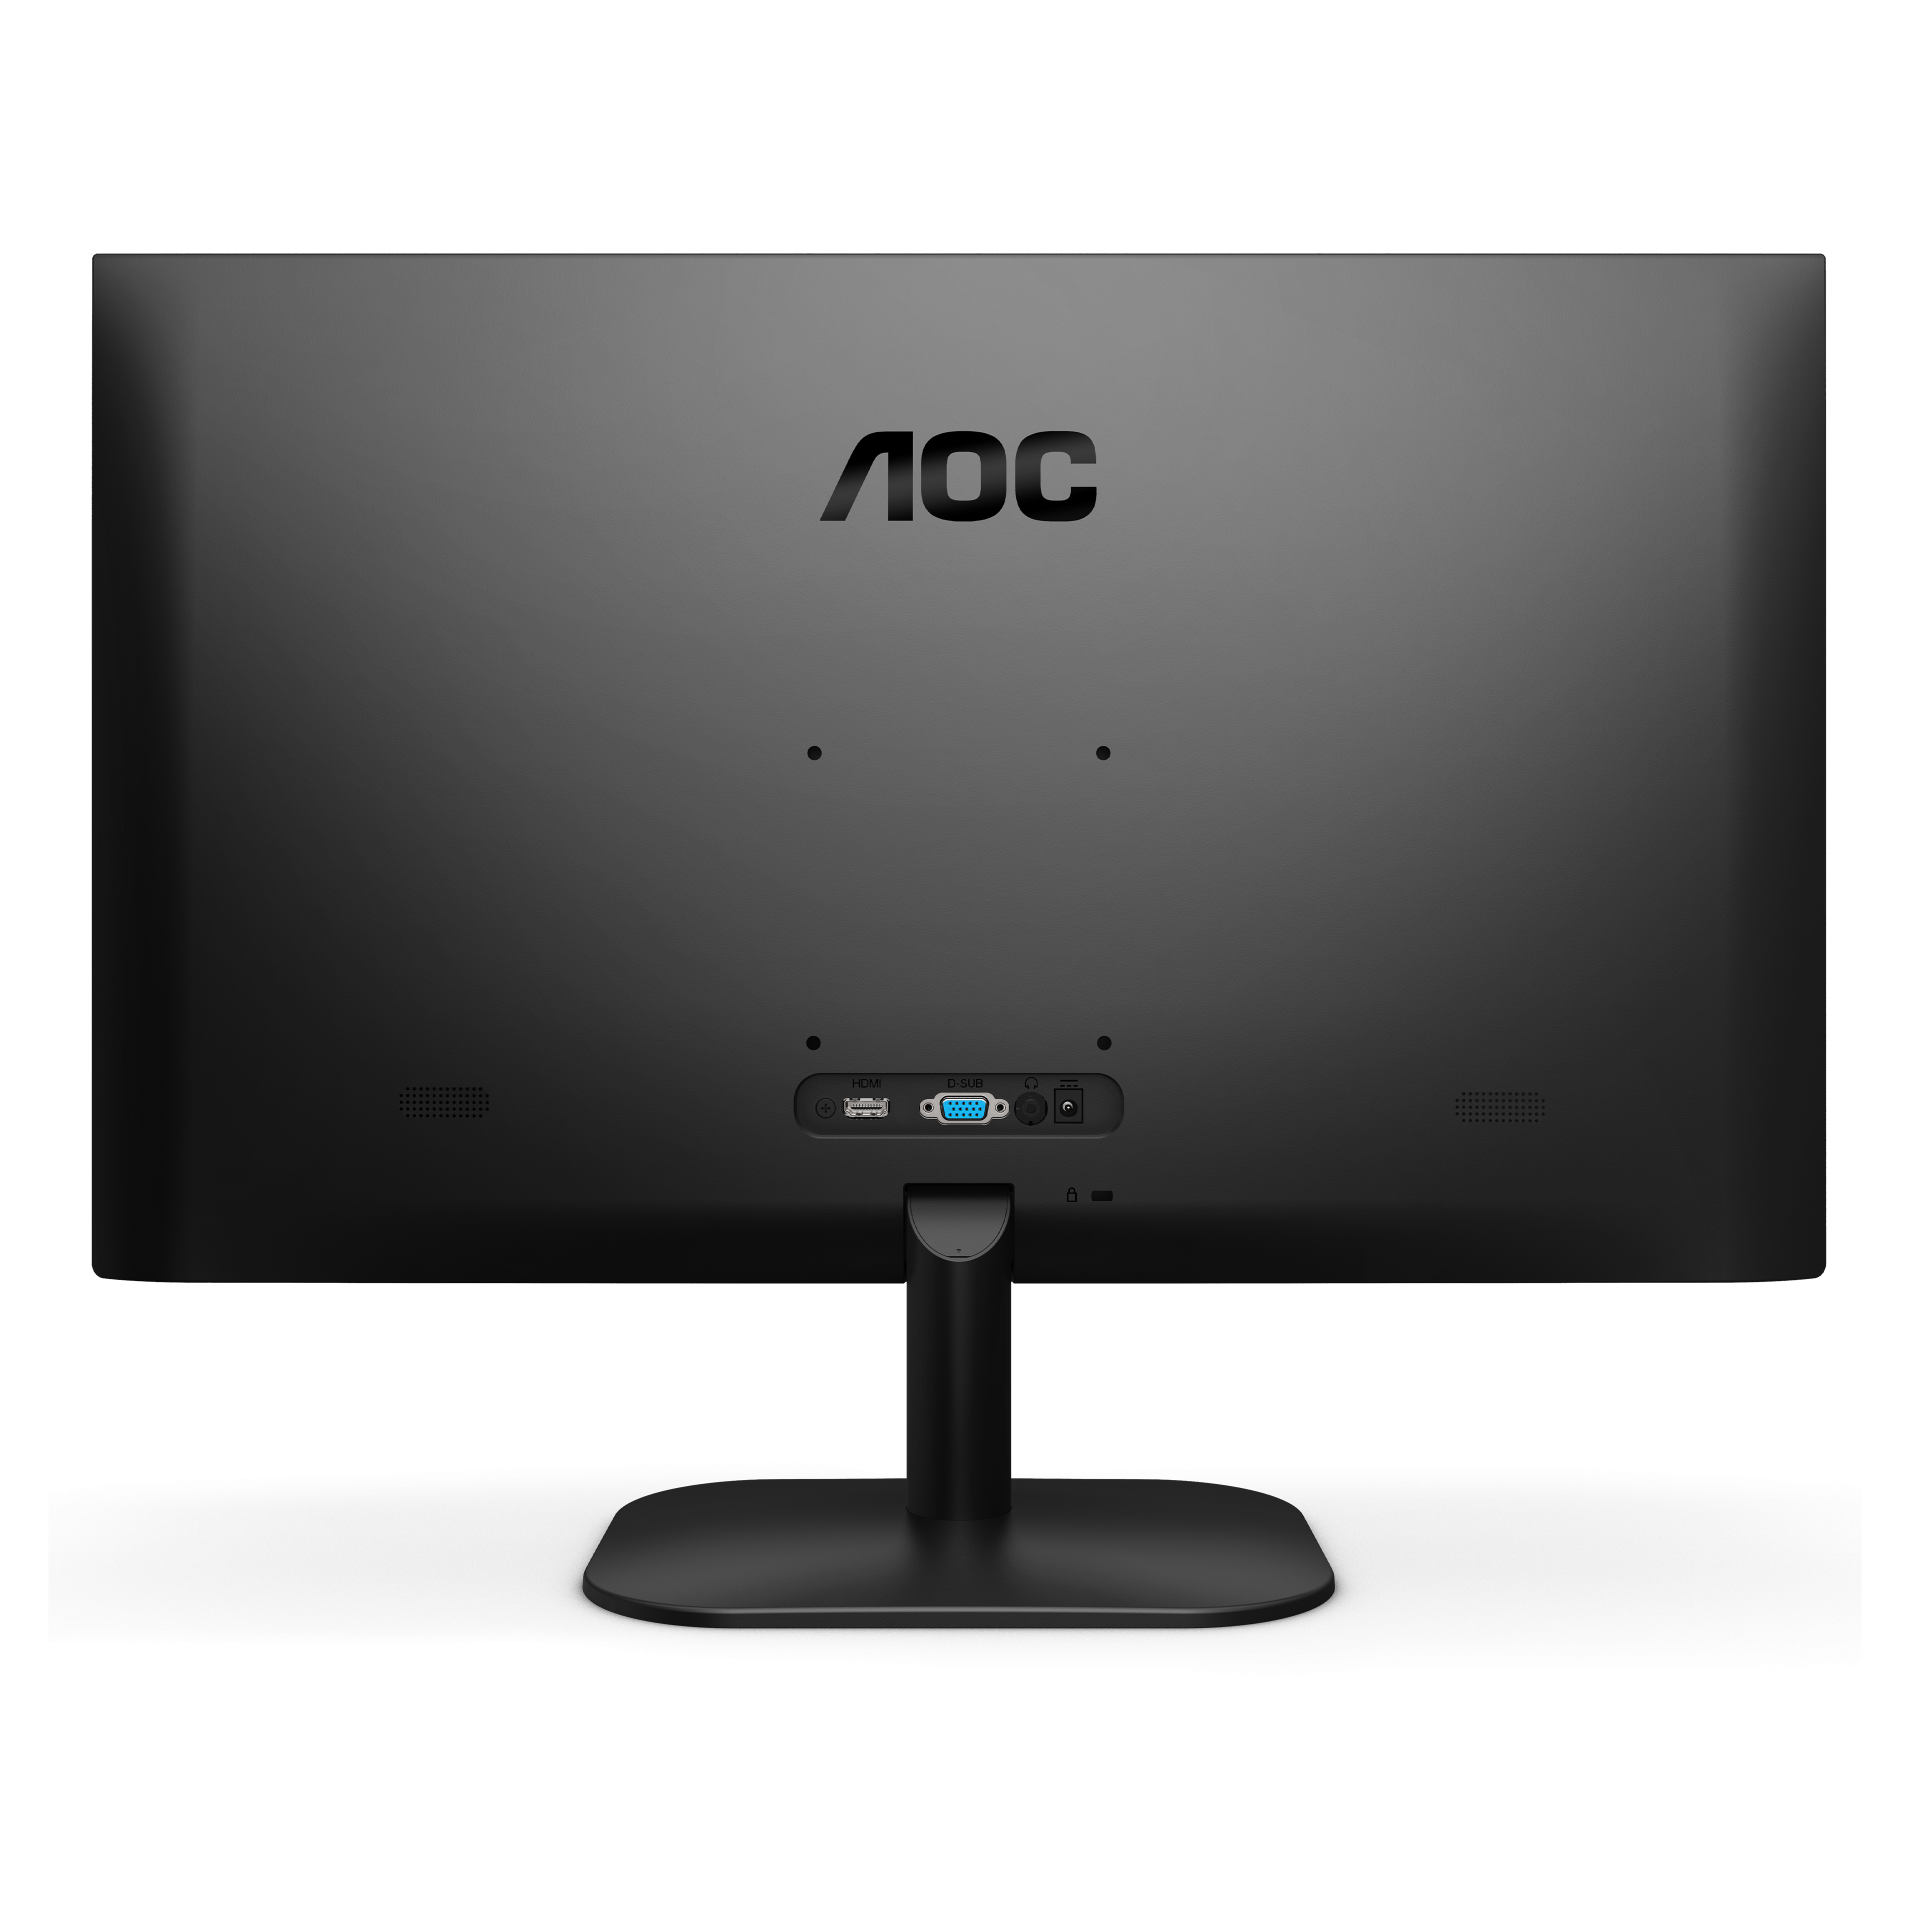 Monitor AOC 27" FHD 1920 x 1080p - Albagame